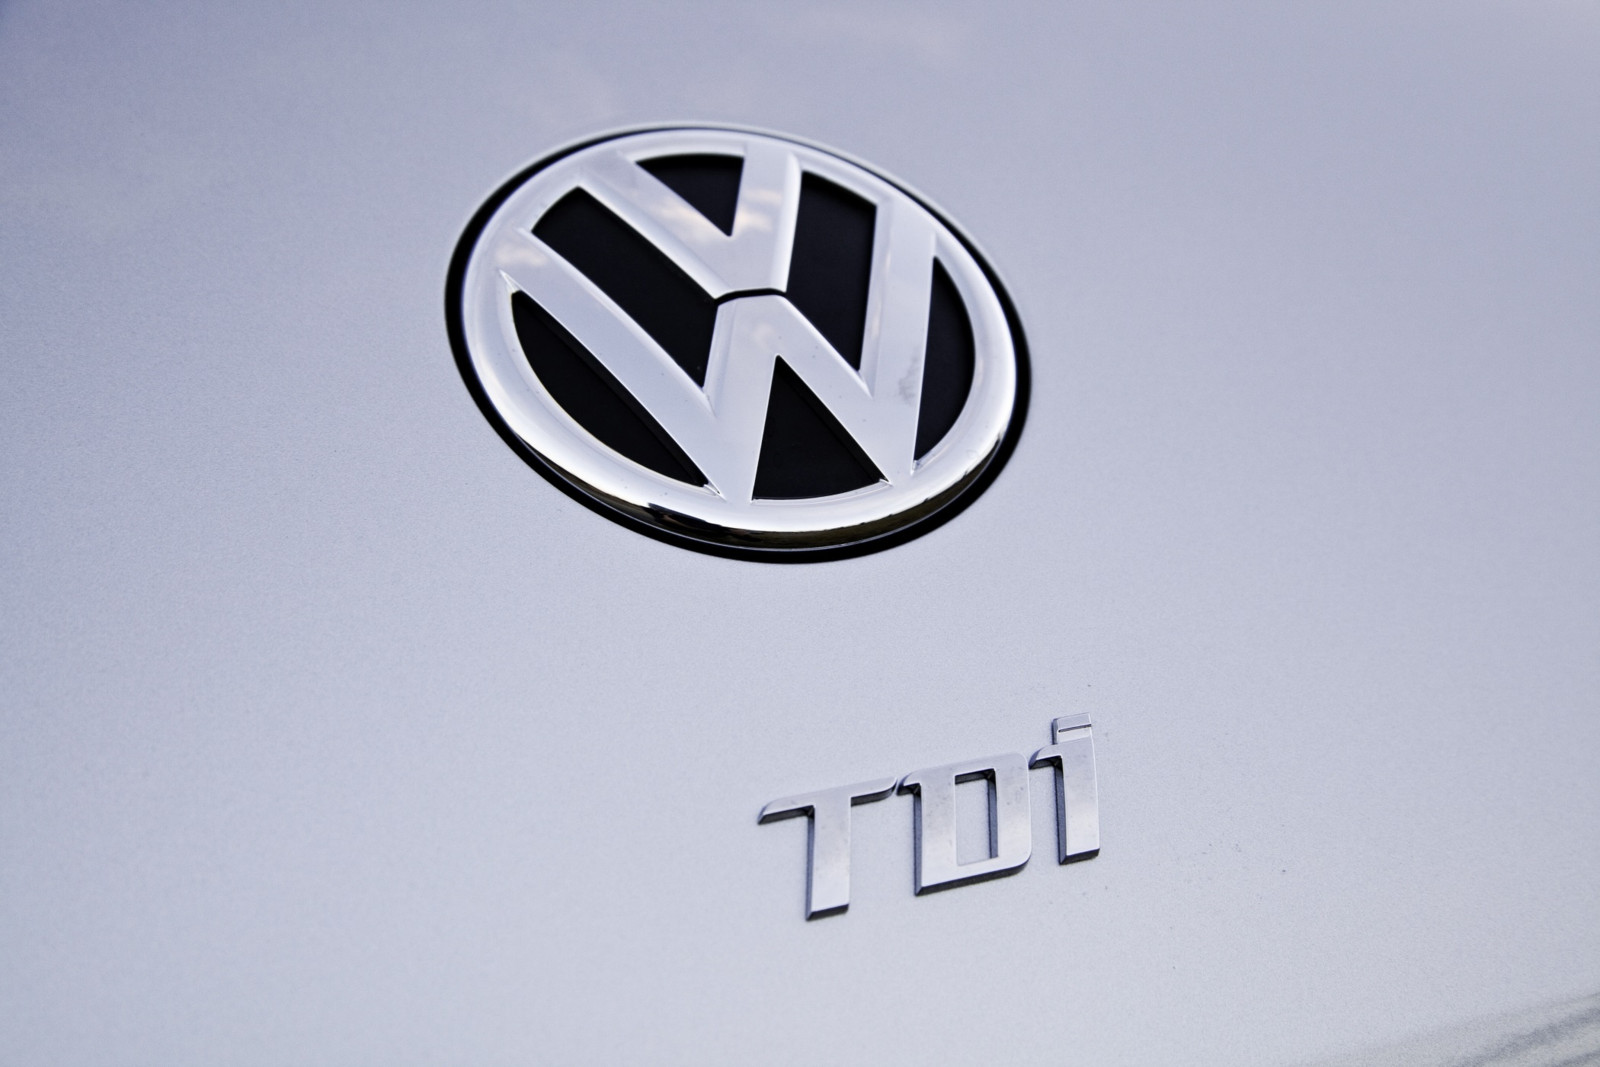 Bei vielen Diesel-Pkw von Volkswagen arbeitet die Abgasreinigung nur in einem kleinen Temperaturbereich korrekt.